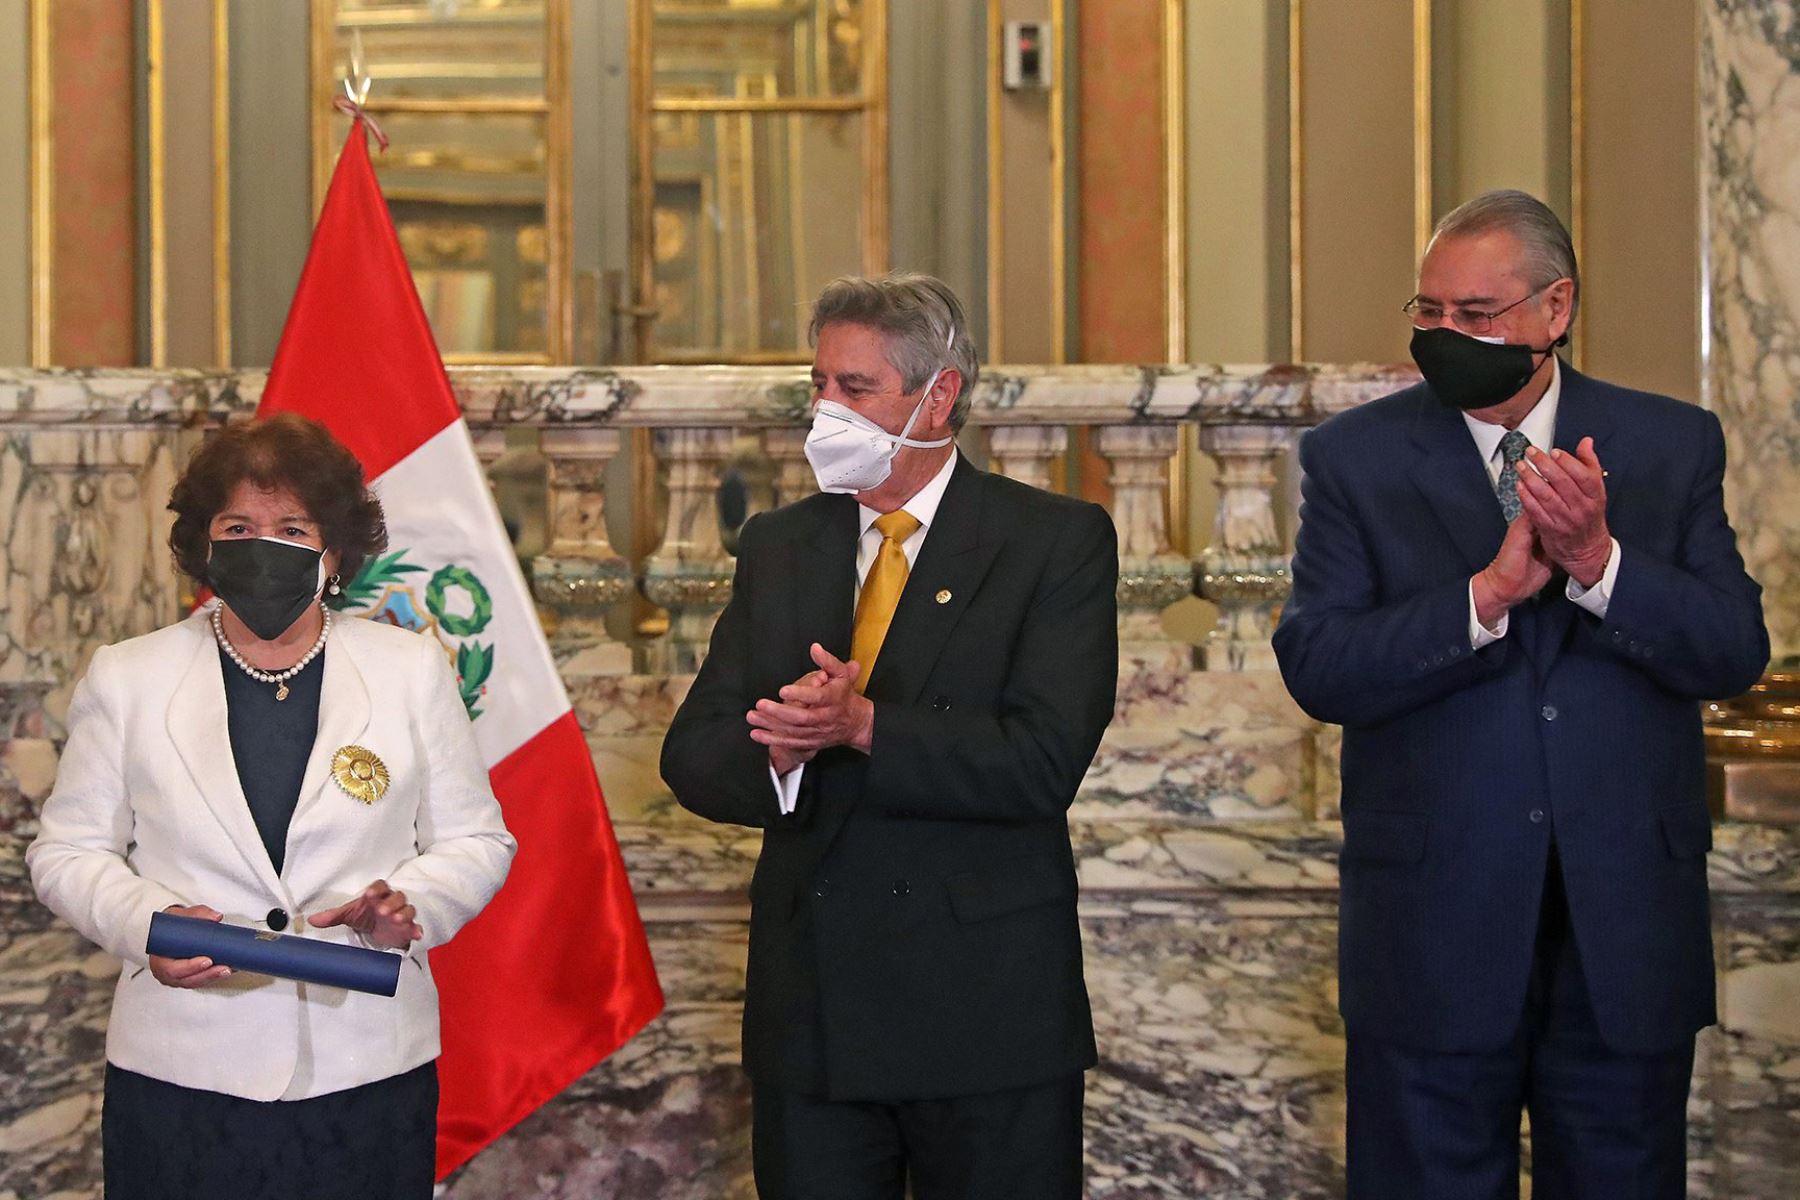 El presidente Francisco Sagasti encabezó la condecoración. Foto: ANDINA/Prensa Presidencia.